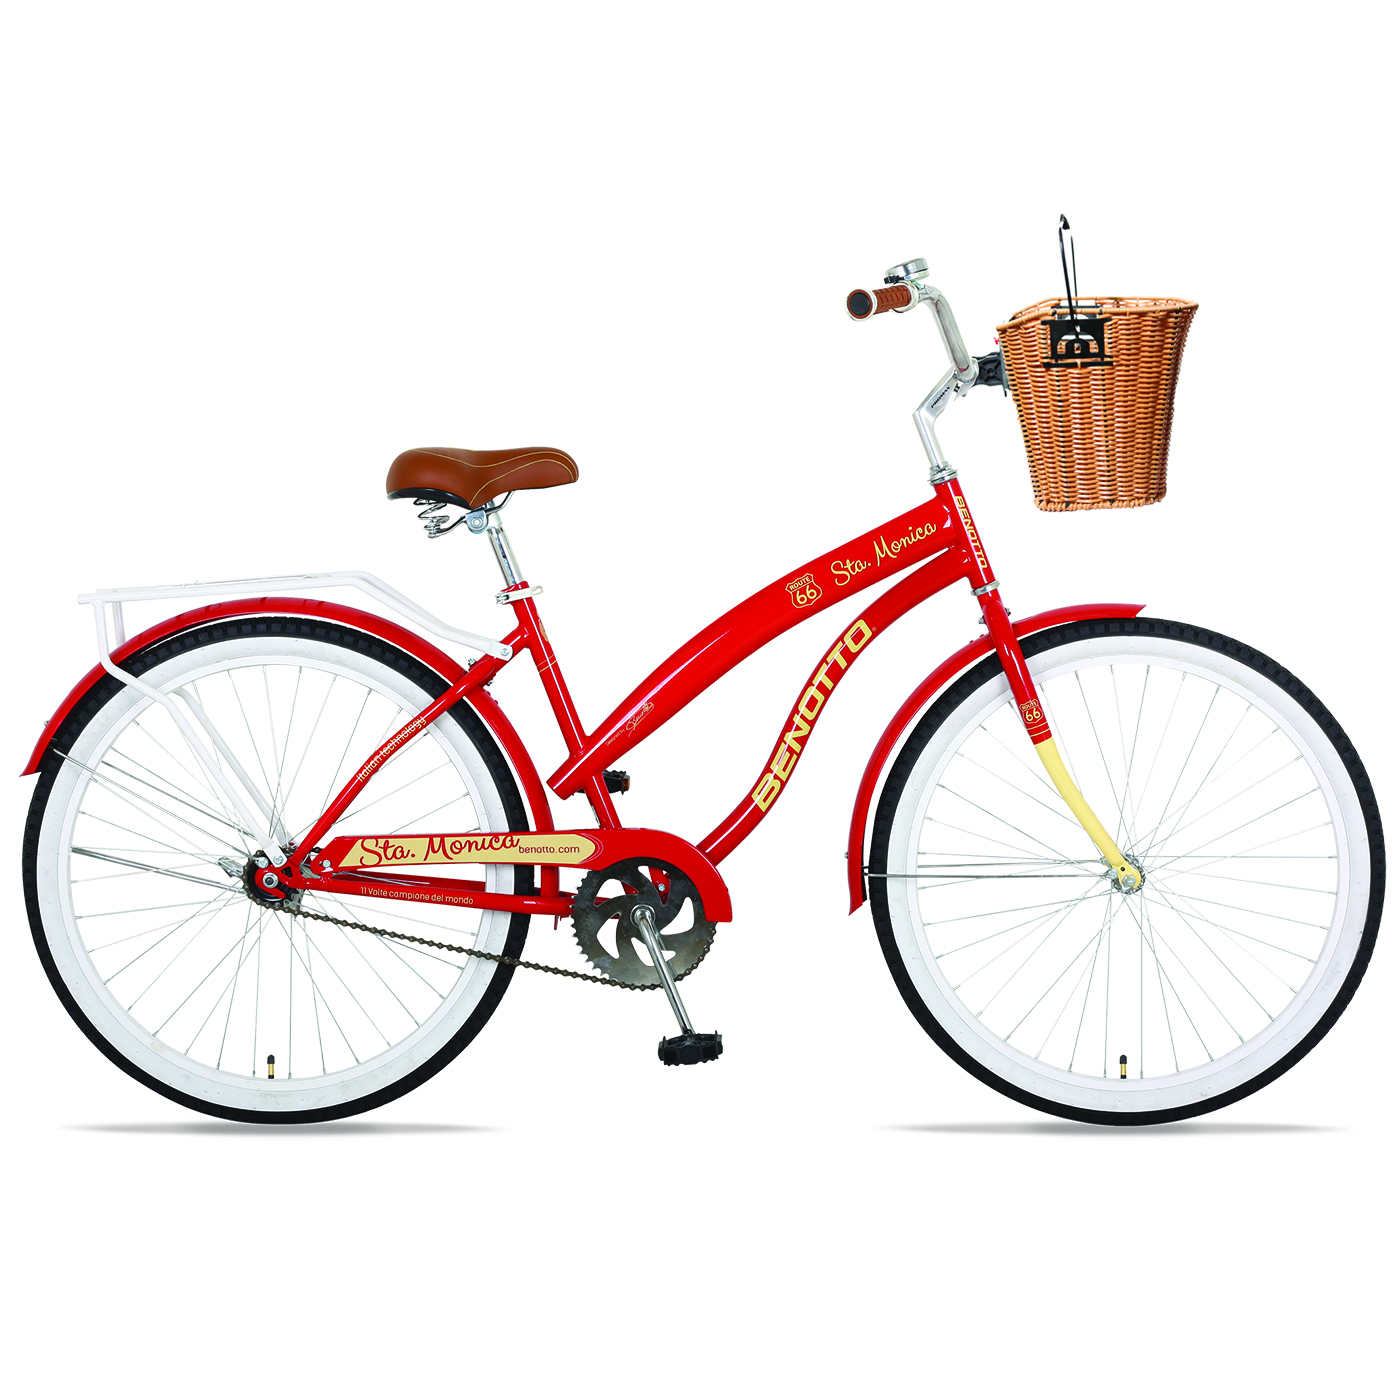 Bicicleta BENOTTO City STA. MONICA R26 1V. Mujer Frenos Contrapedal con Canastilla Acero Rojo/Crema Talla:UN